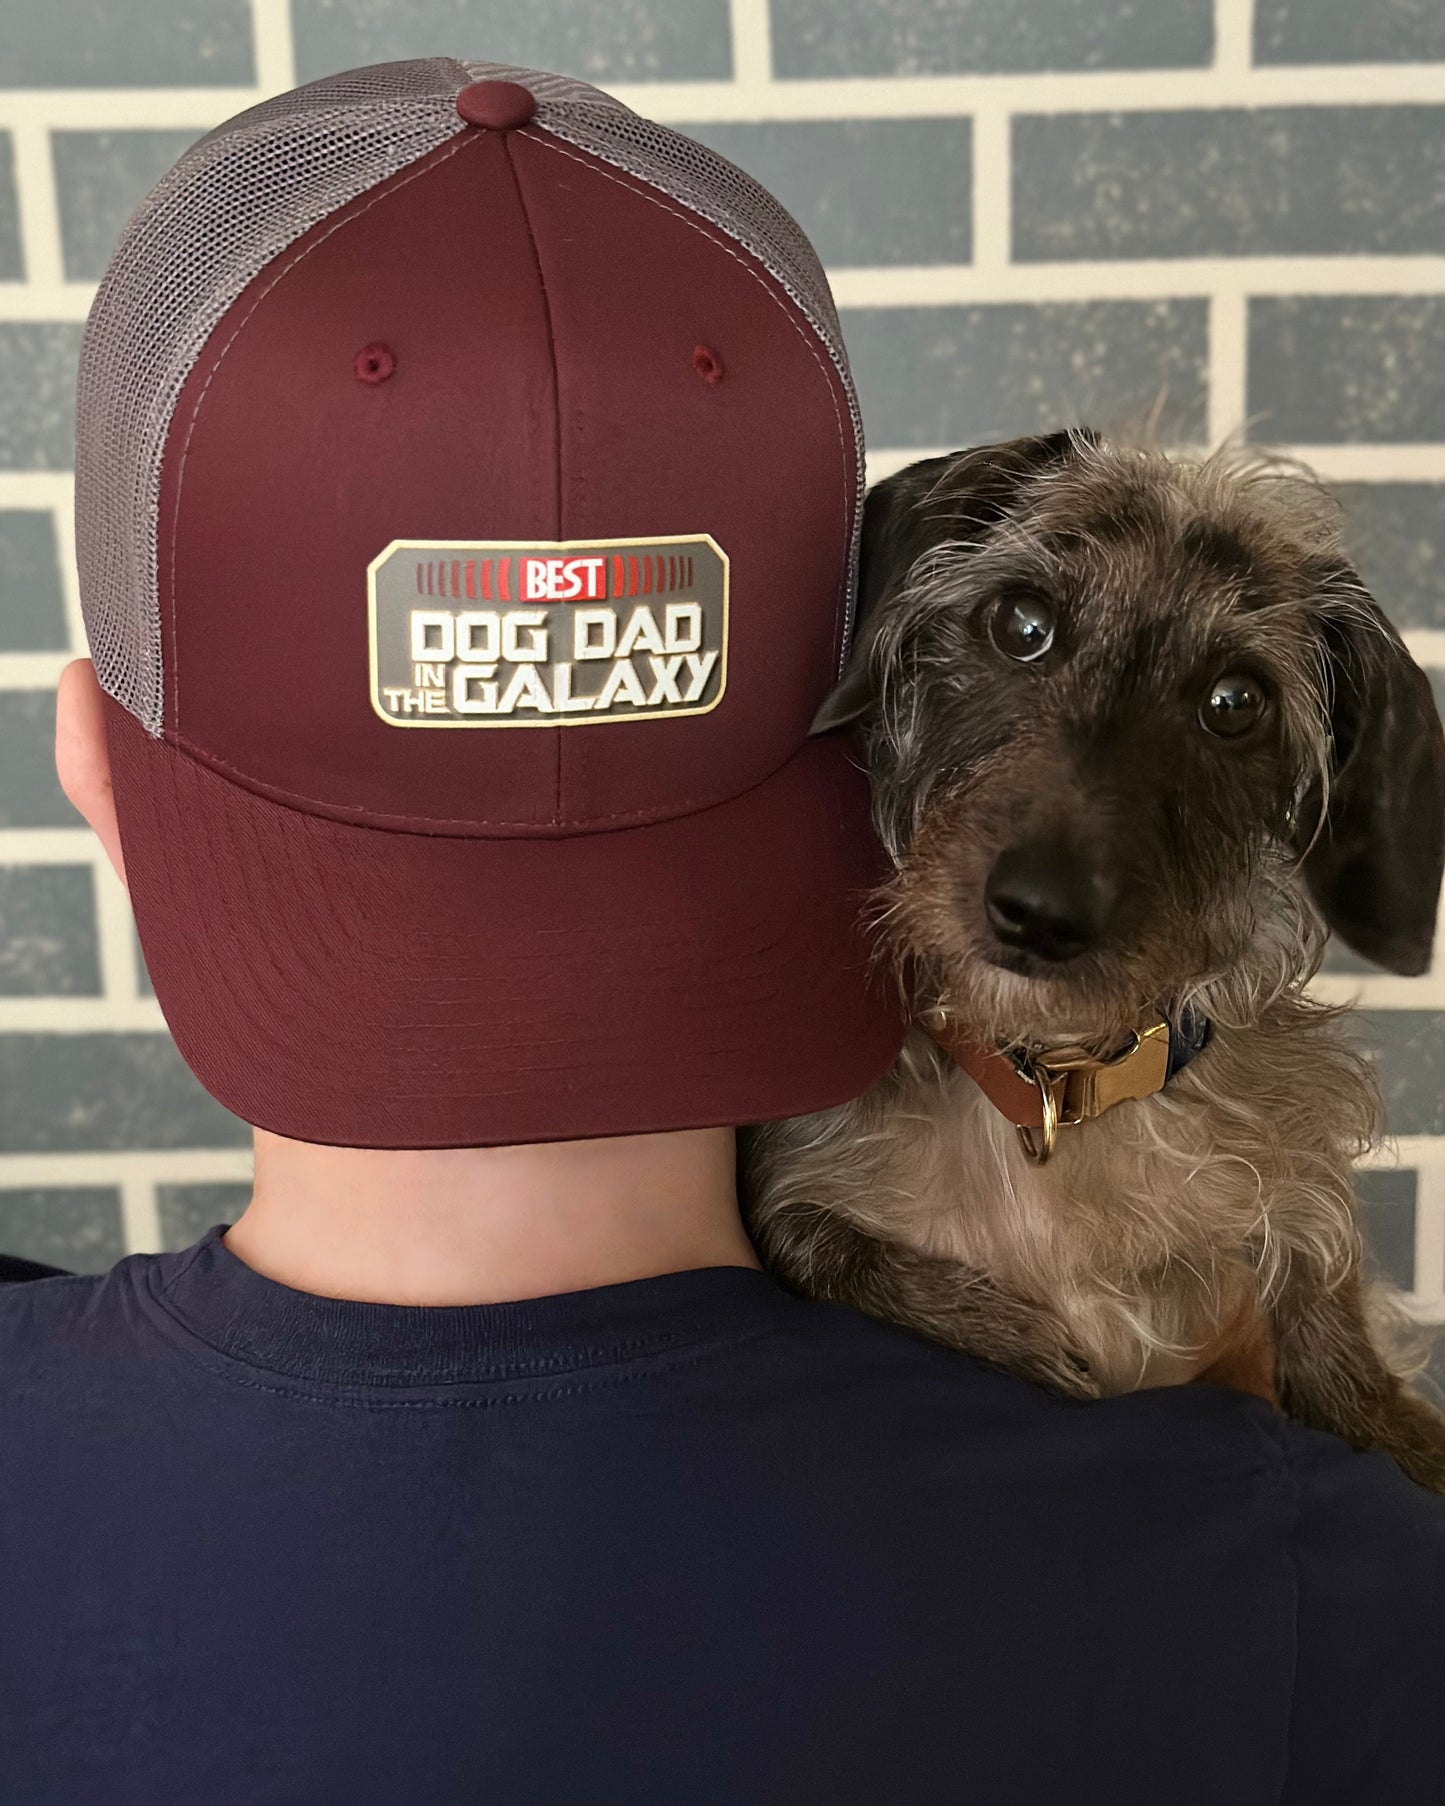 Best Dog Dad in the Galaxy Trucker Hat